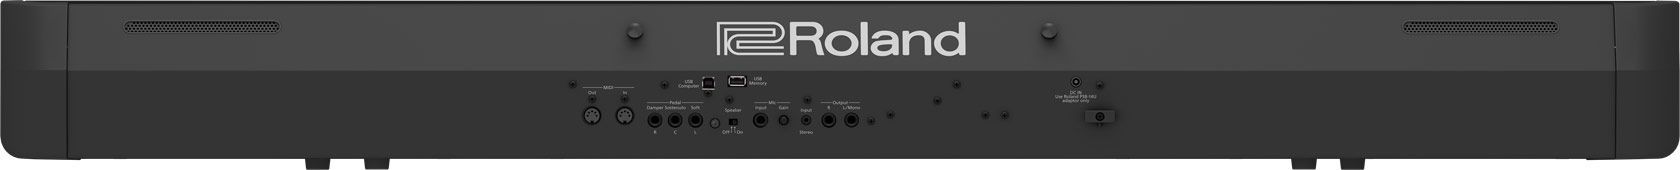 Roland FP-90X-BK Stagepiano schwarz Digitalpiano mit Lautsprechern, FP90xBK 